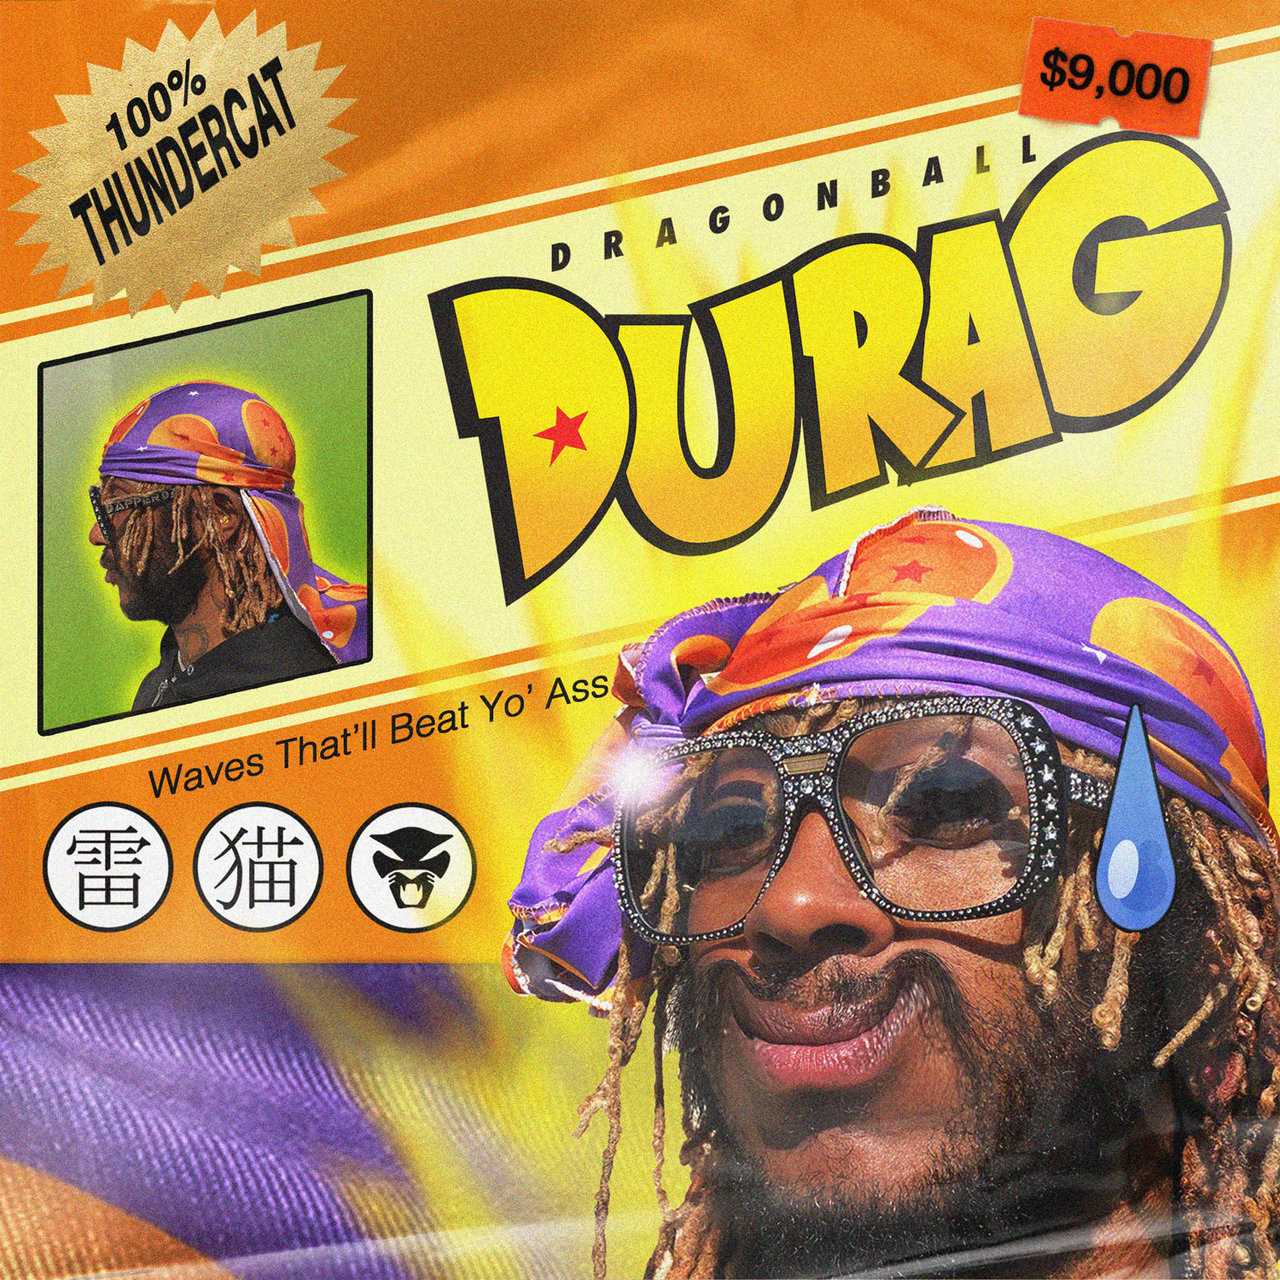 Thundercat - Dragonball Durag (Cover)